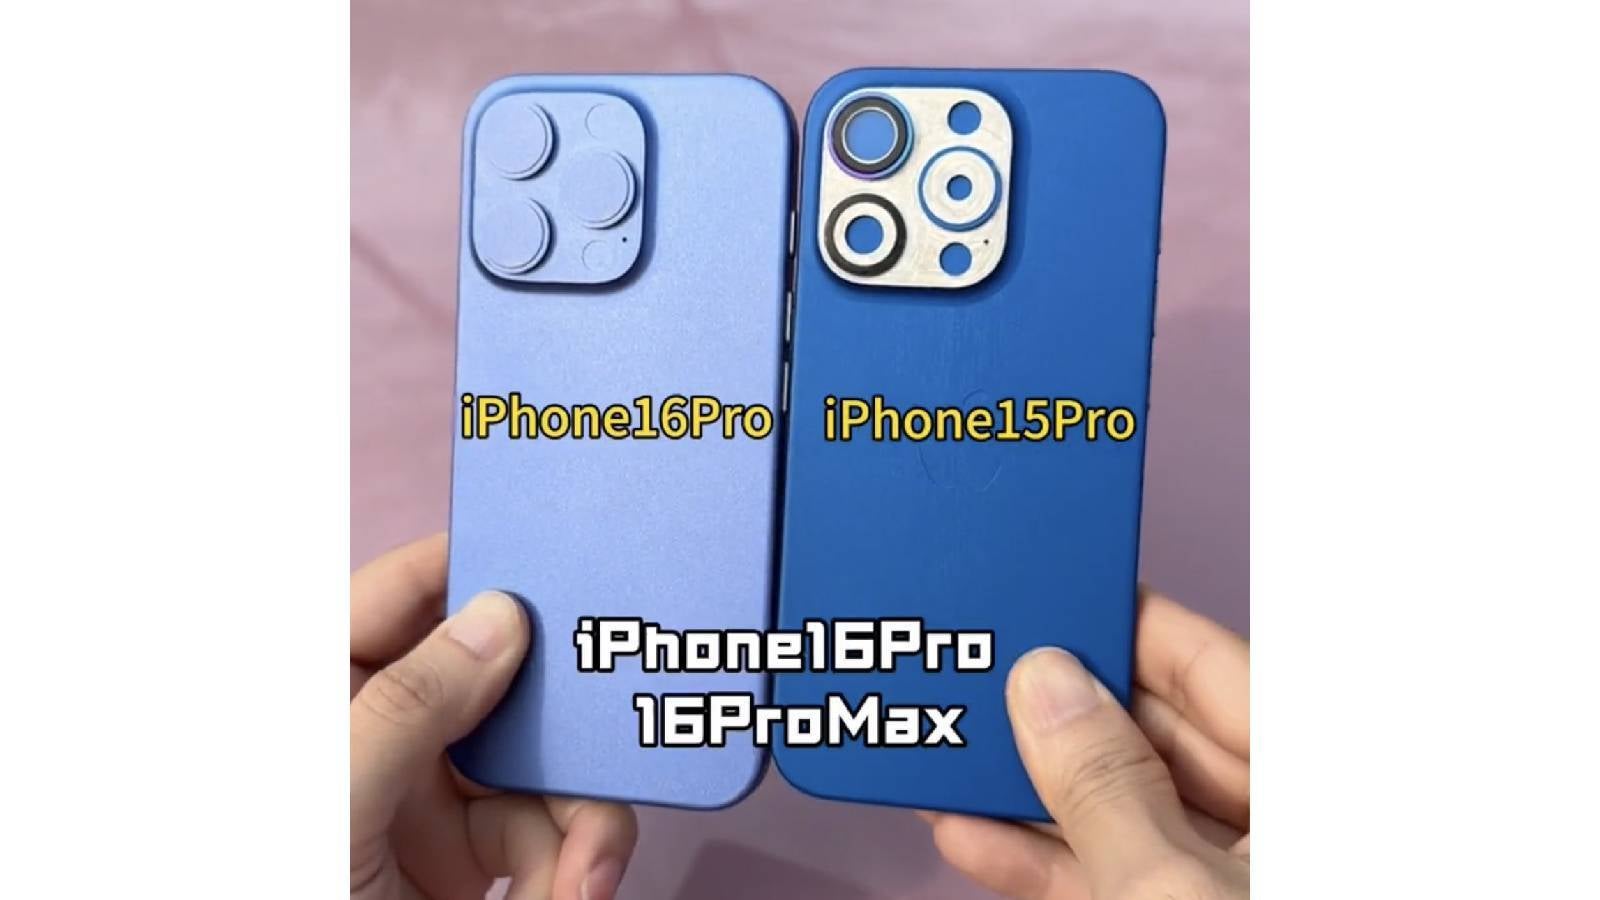 L'iPhone 16 Pro devrait être plus grand que l'iPhone 15 Pro - Il reste peu de surprises sur l'iPhone 16 alors que des images d'unités factices, de coques et de nouvelles variantes de couleurs ont été divulguées